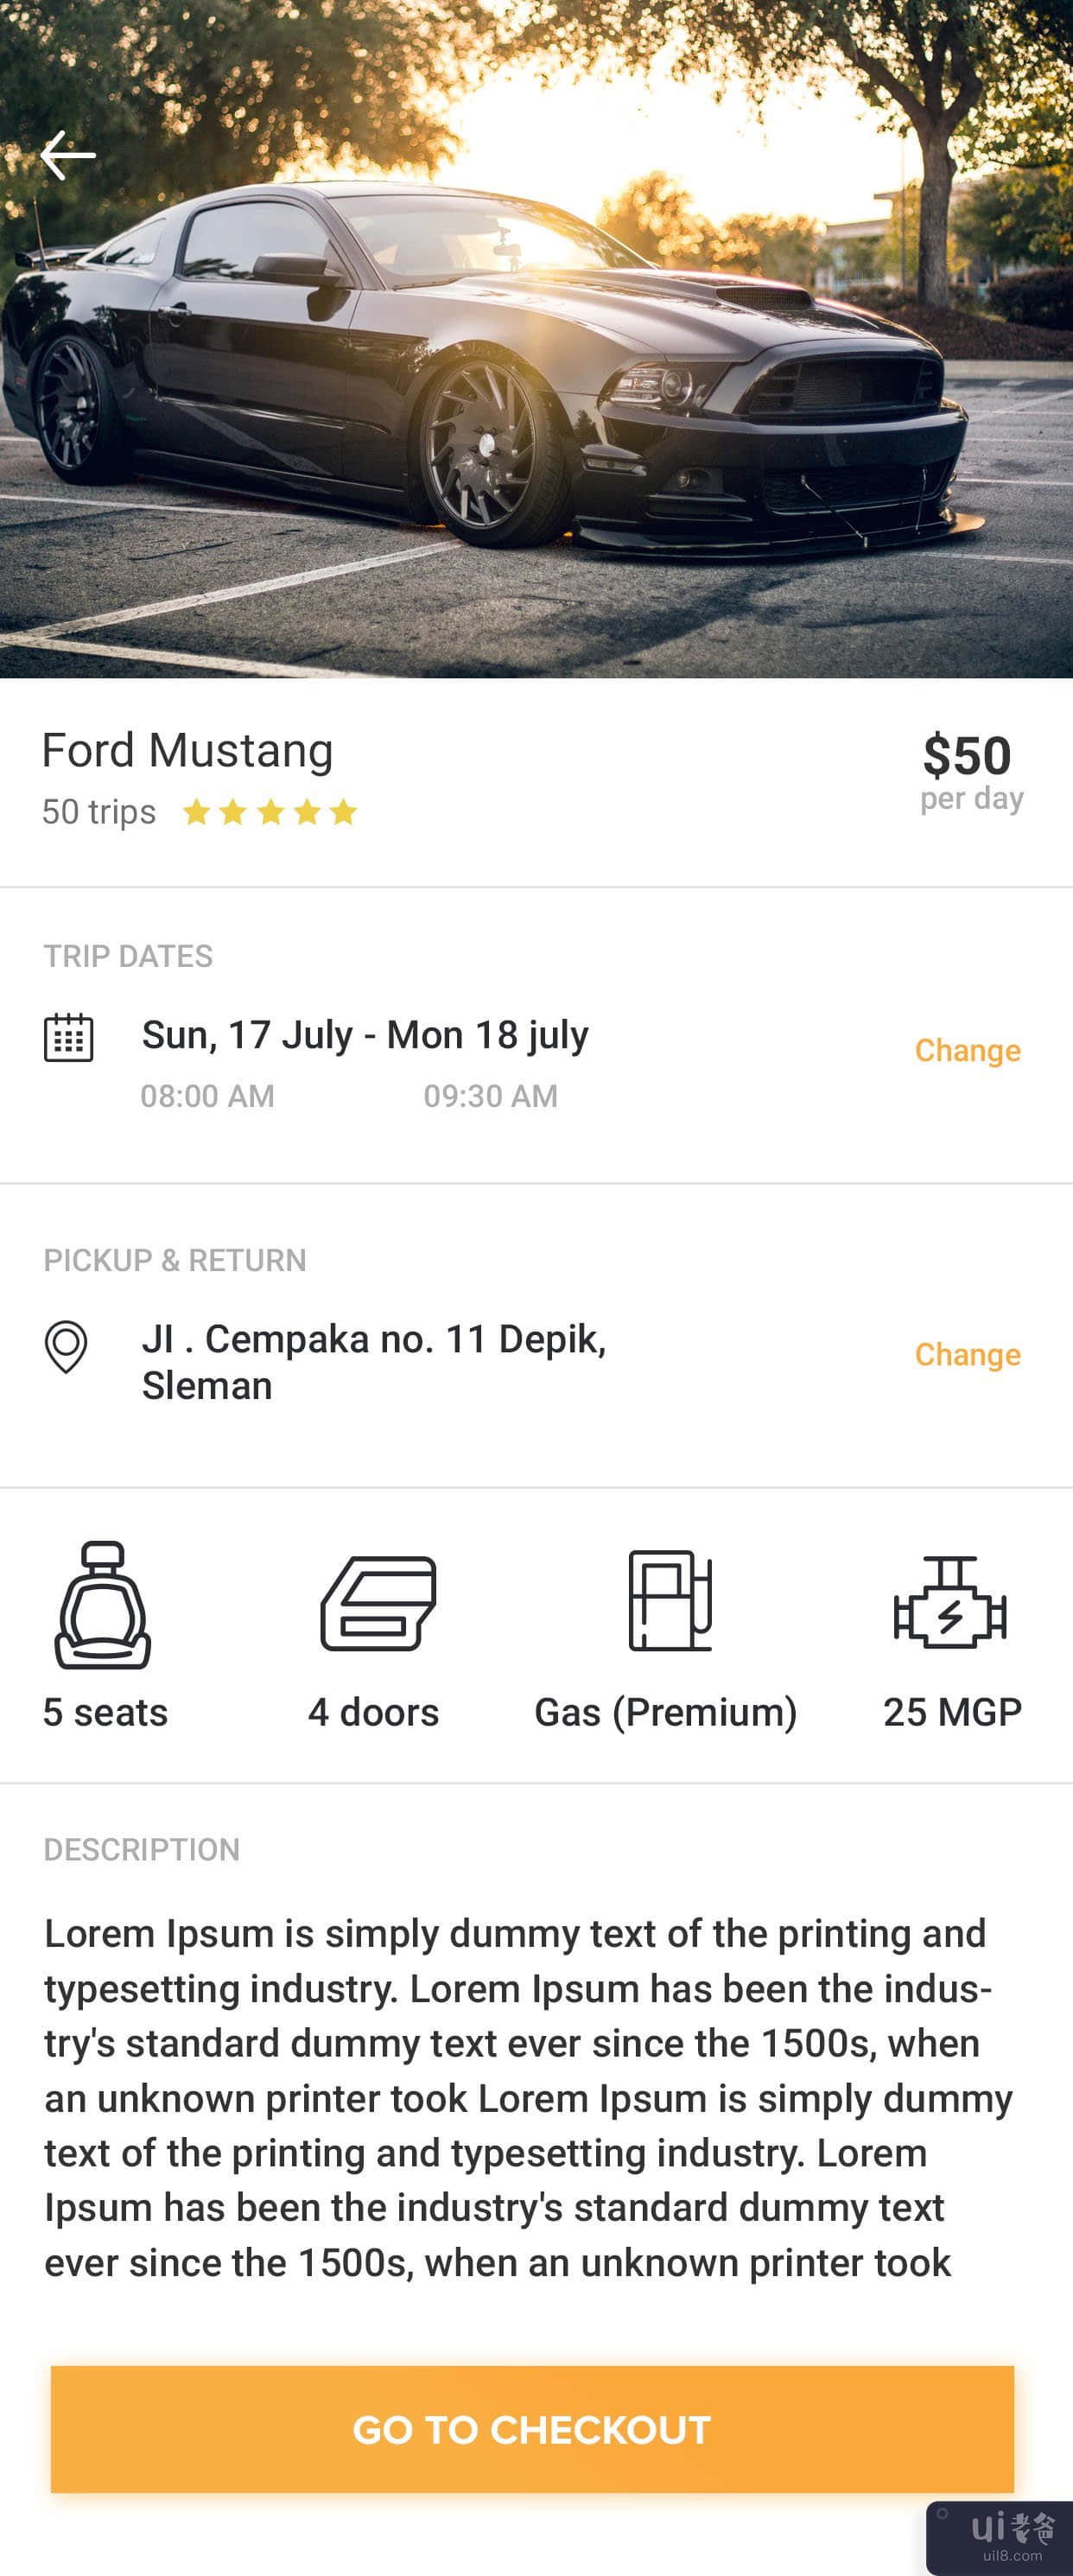 租车移动应用 ||(Car Rental Mobile App ||)插图1